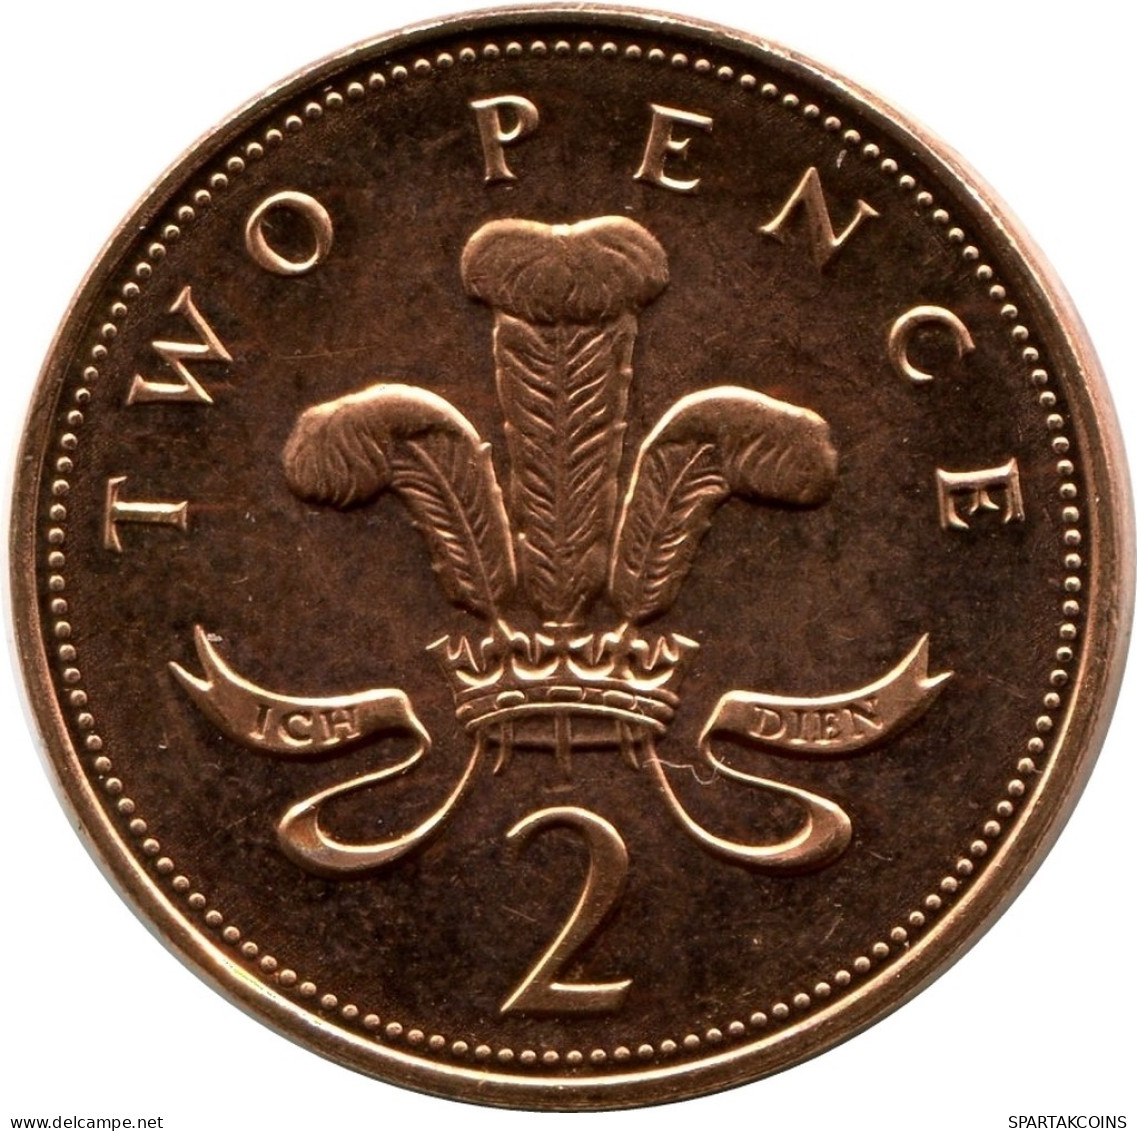 2 PENCE 1998 UK GROßBRITANNIEN GREAT BRITAIN Münze UNC #M10195.D - 2 Pence & 2 New Pence